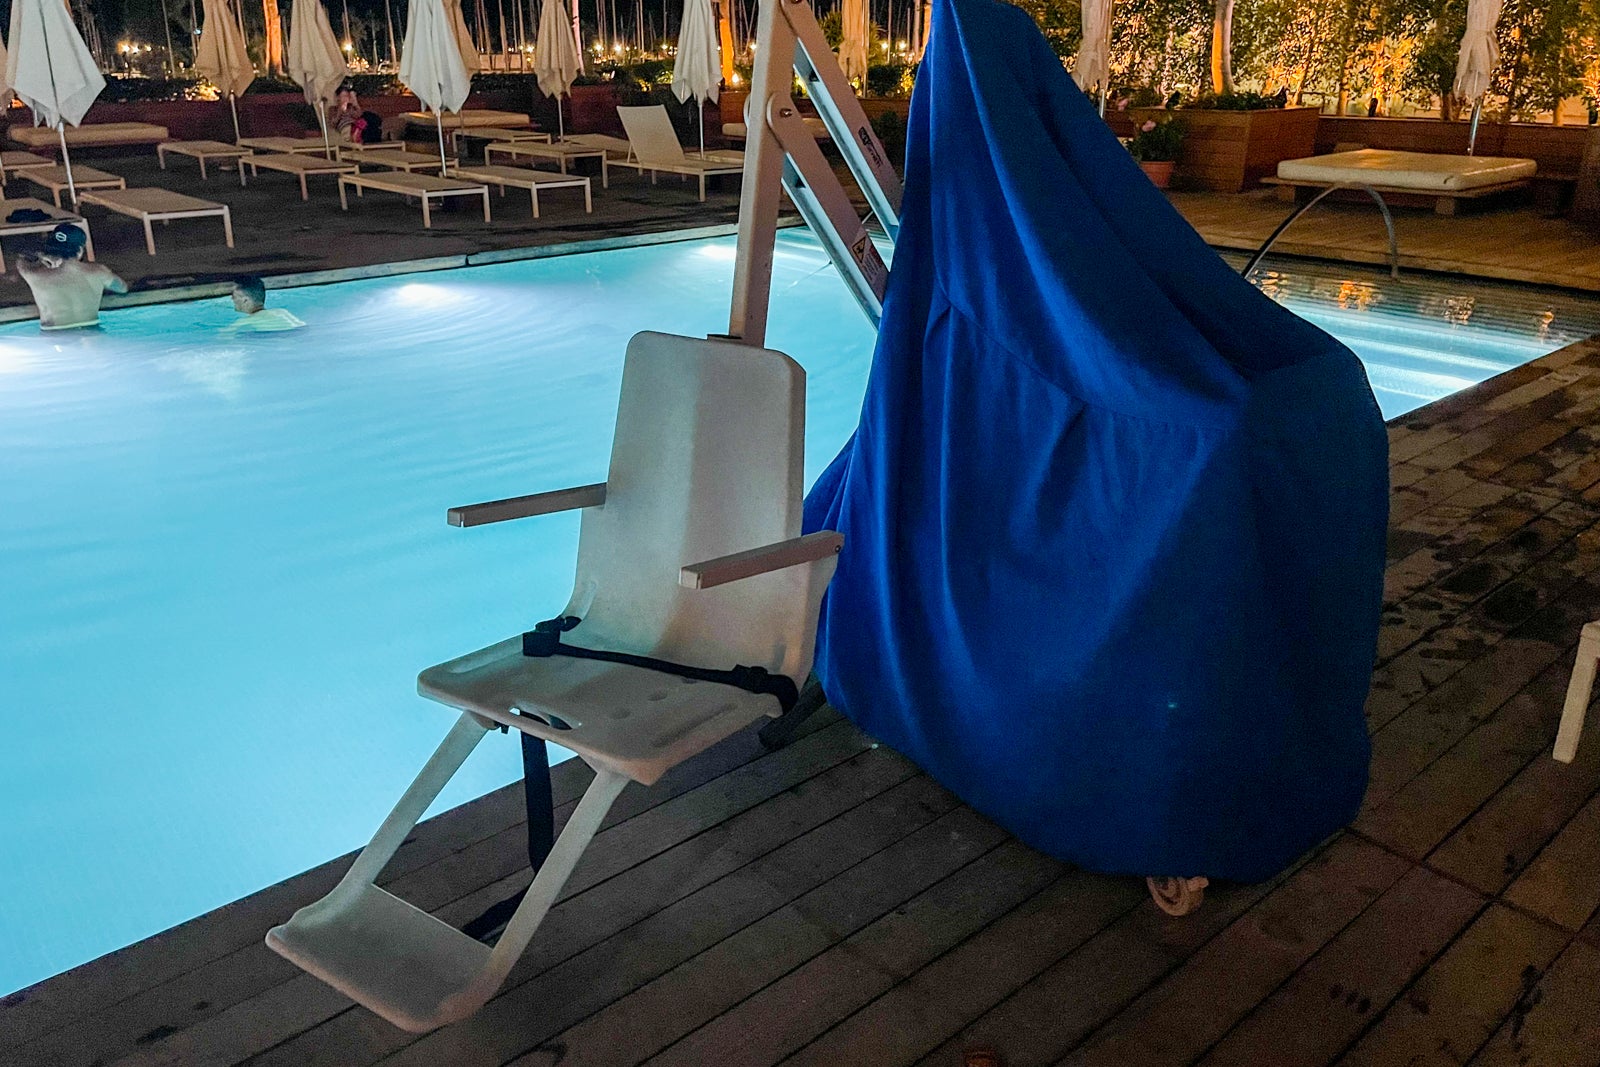 Pool chair at the Modern Honolulu